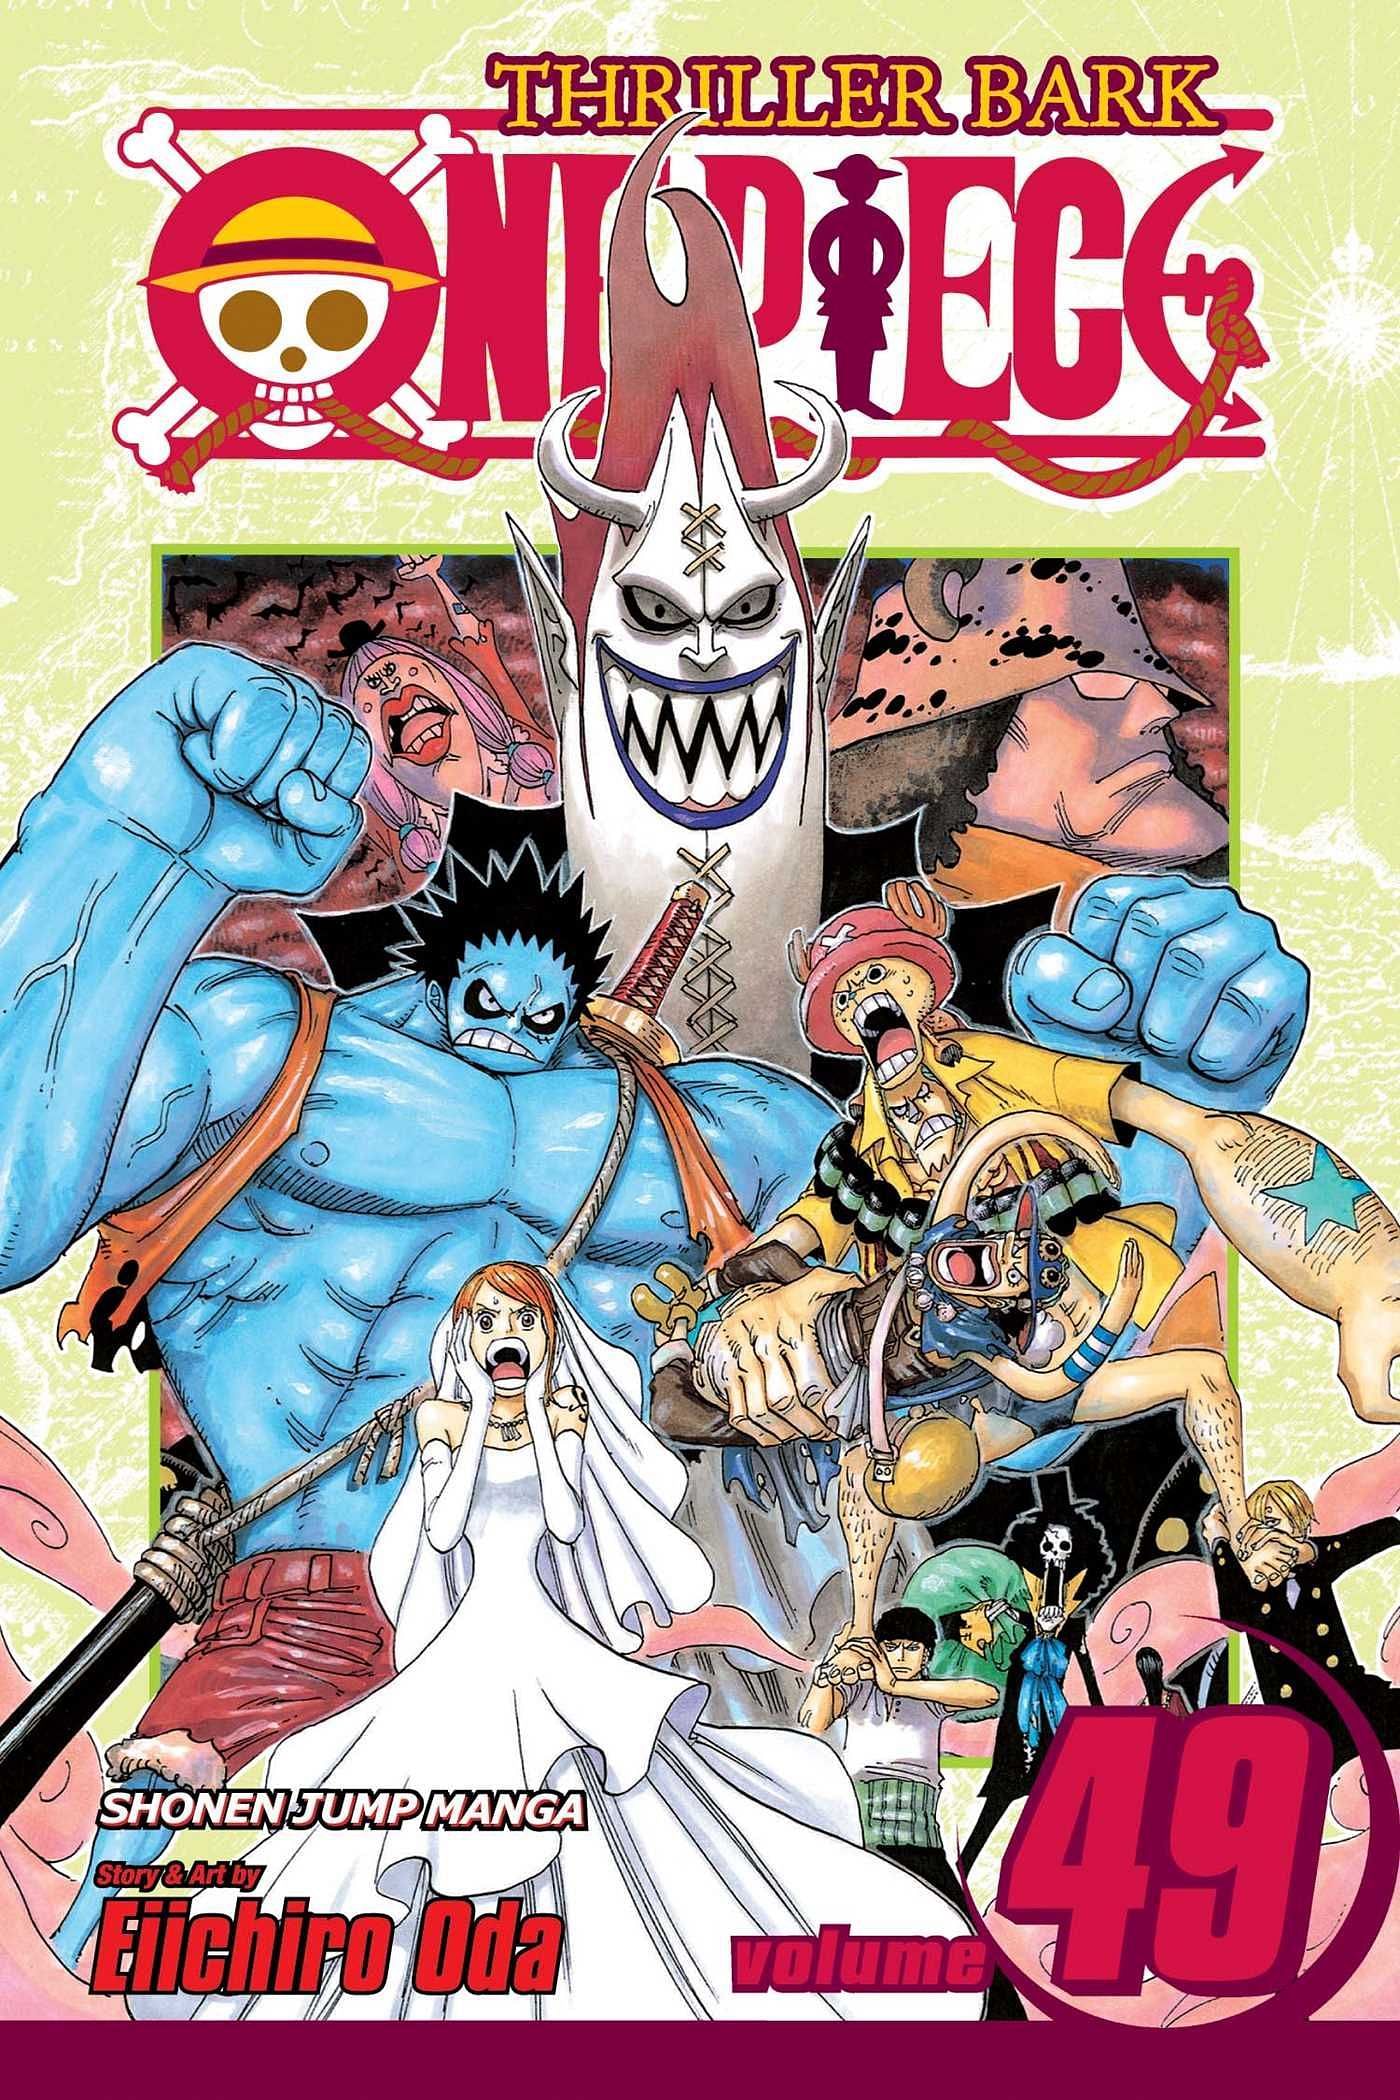 The cover art for One Piece Volume 49 (Image via Shueisha)